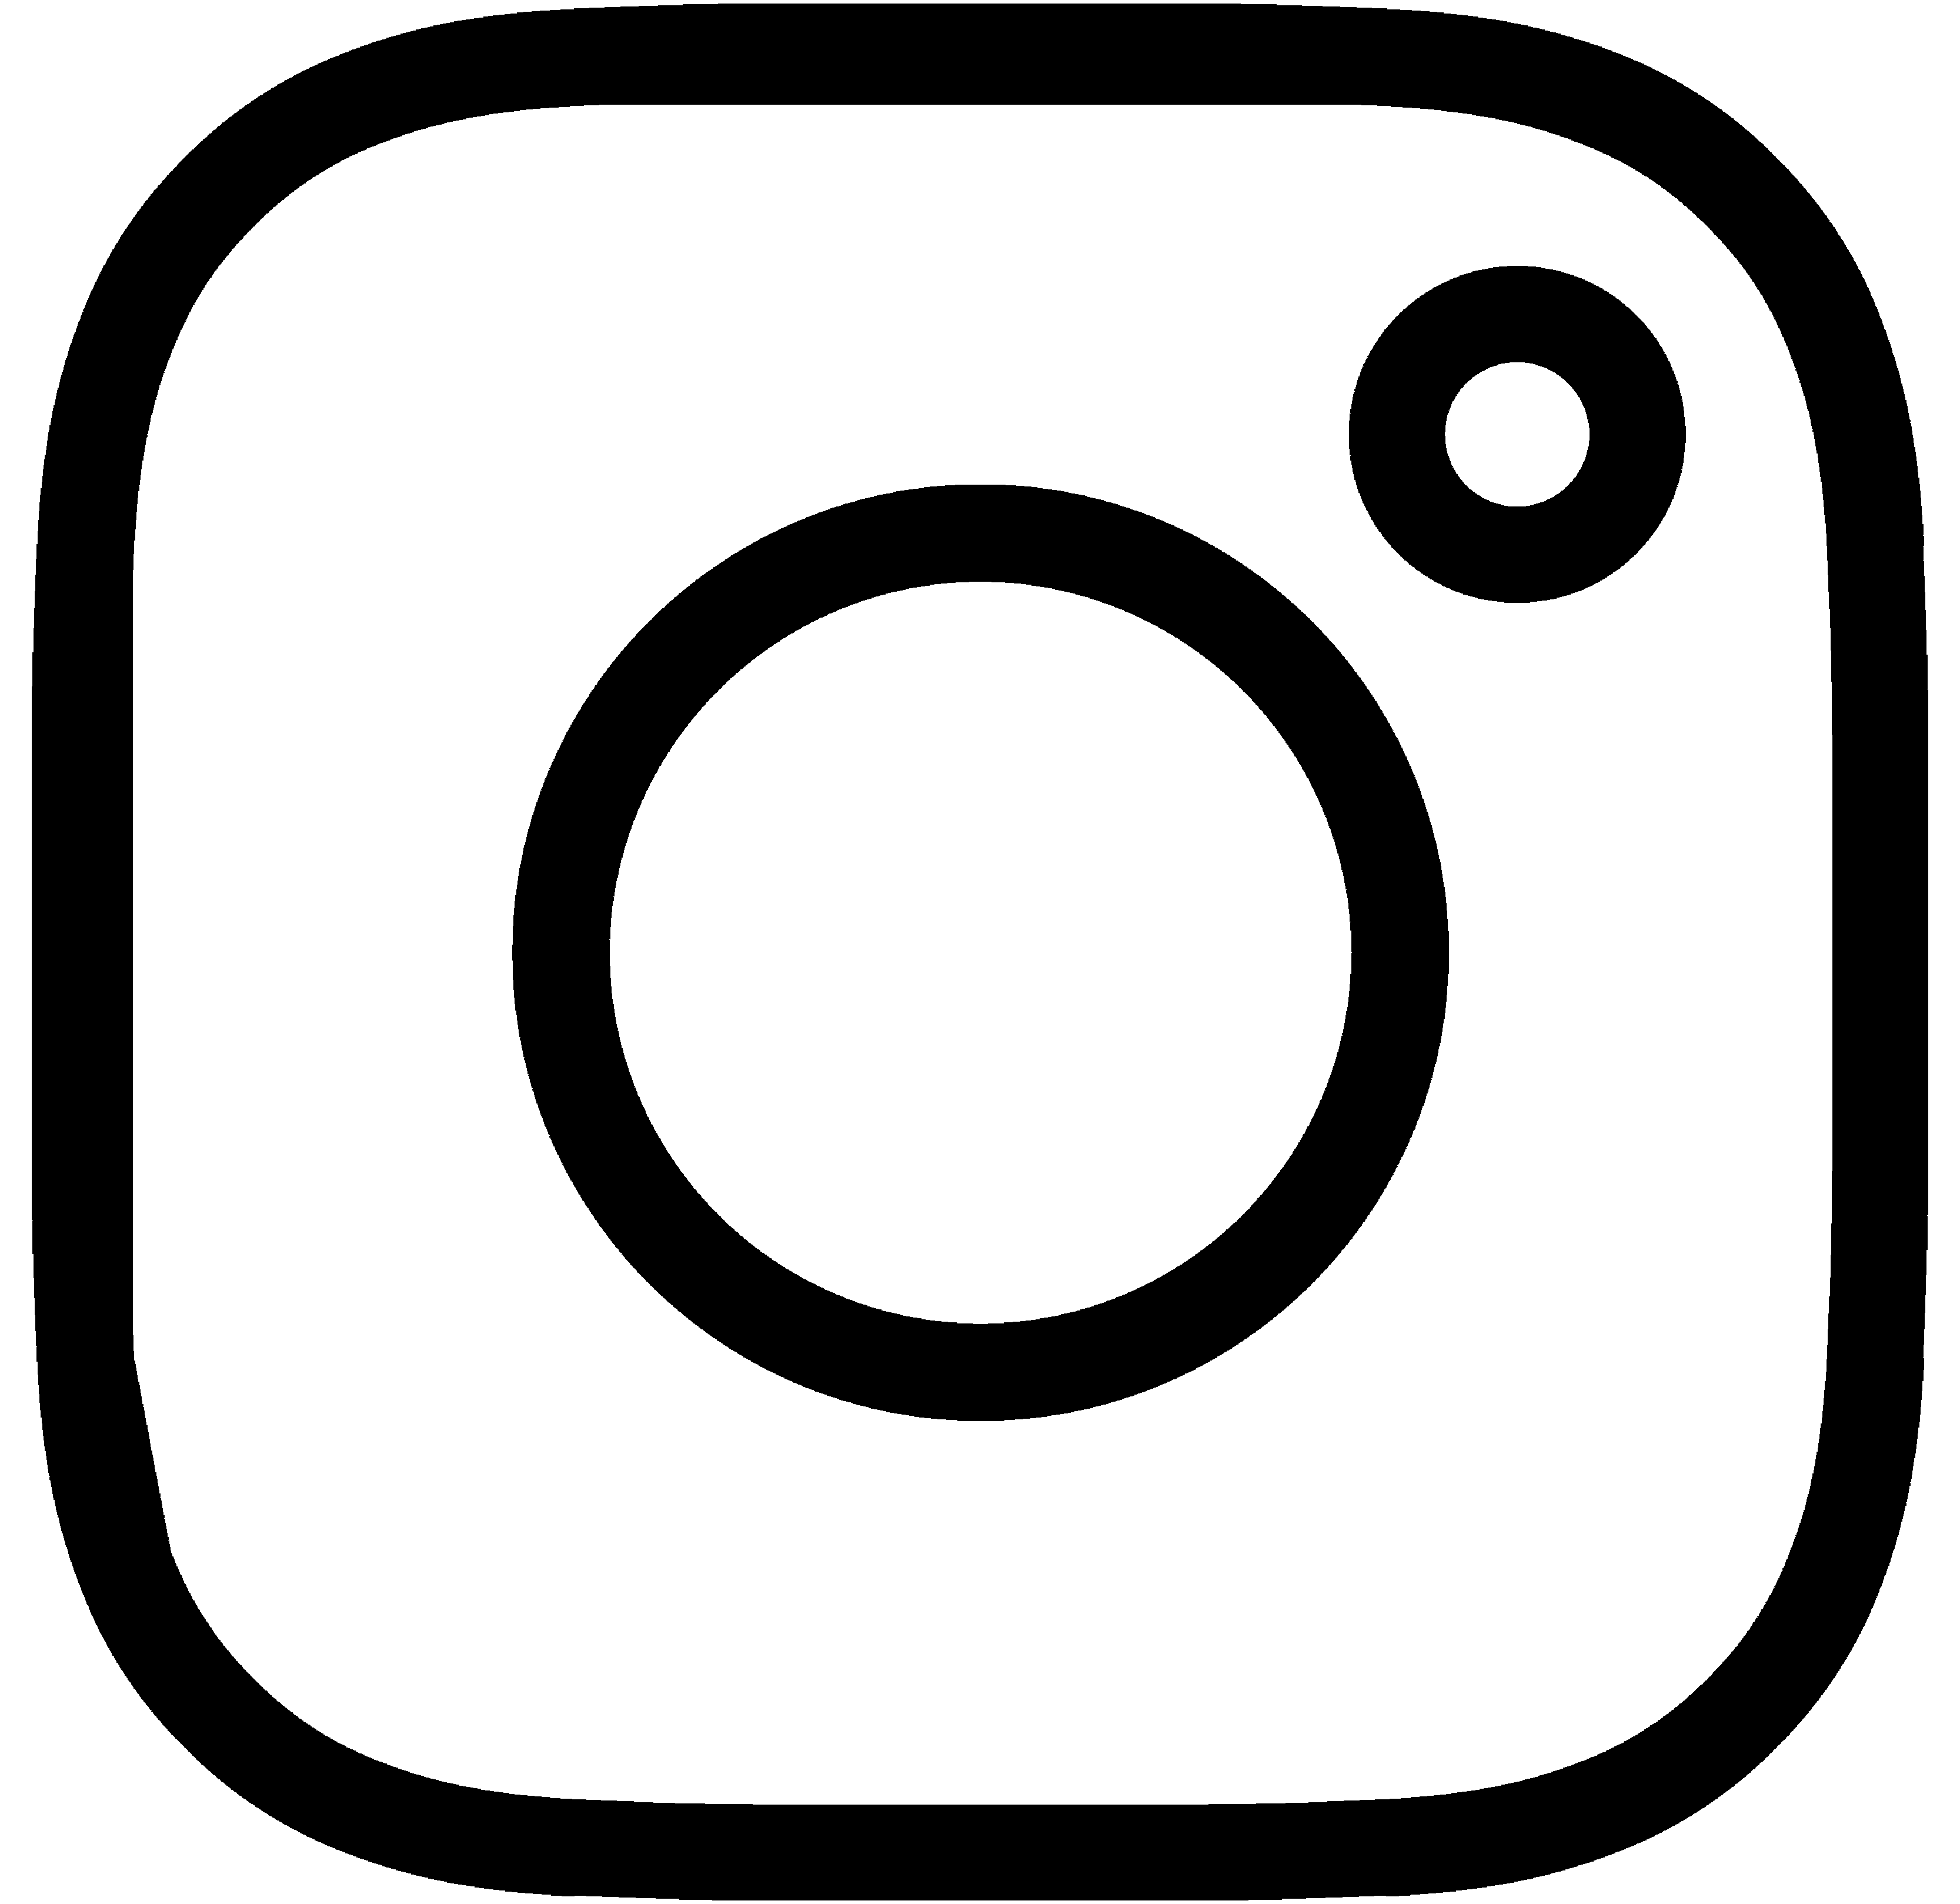 Un pictogramme noir représentant le logo de Instagram